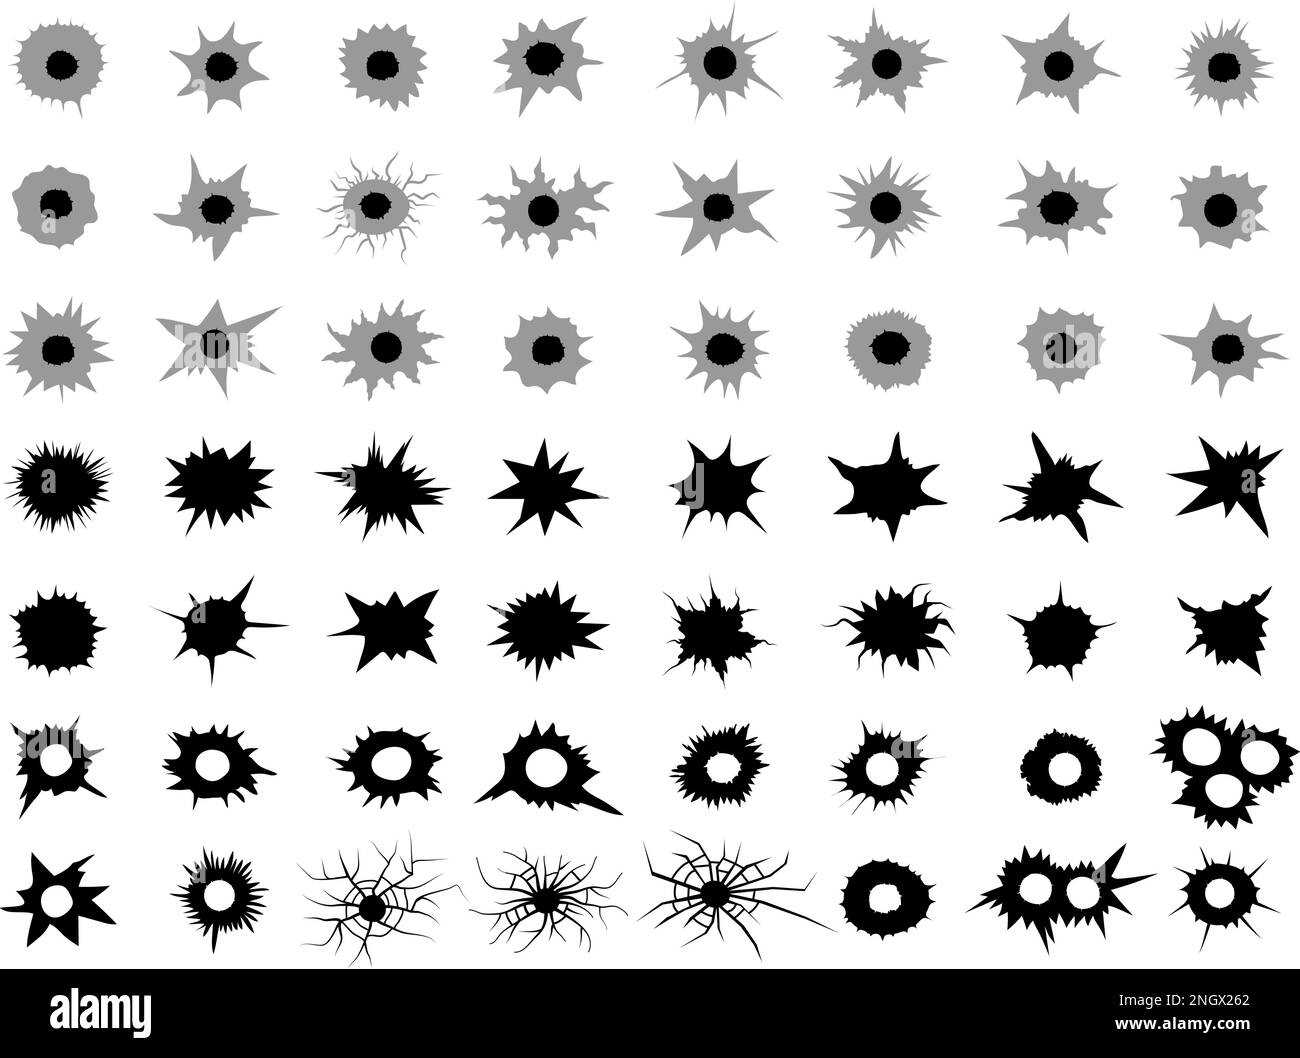 Trous de puces. Points fissurés de la zone de tir de coups de feu Collection récente de silhouettes vectorielles Illustration de Vecteur